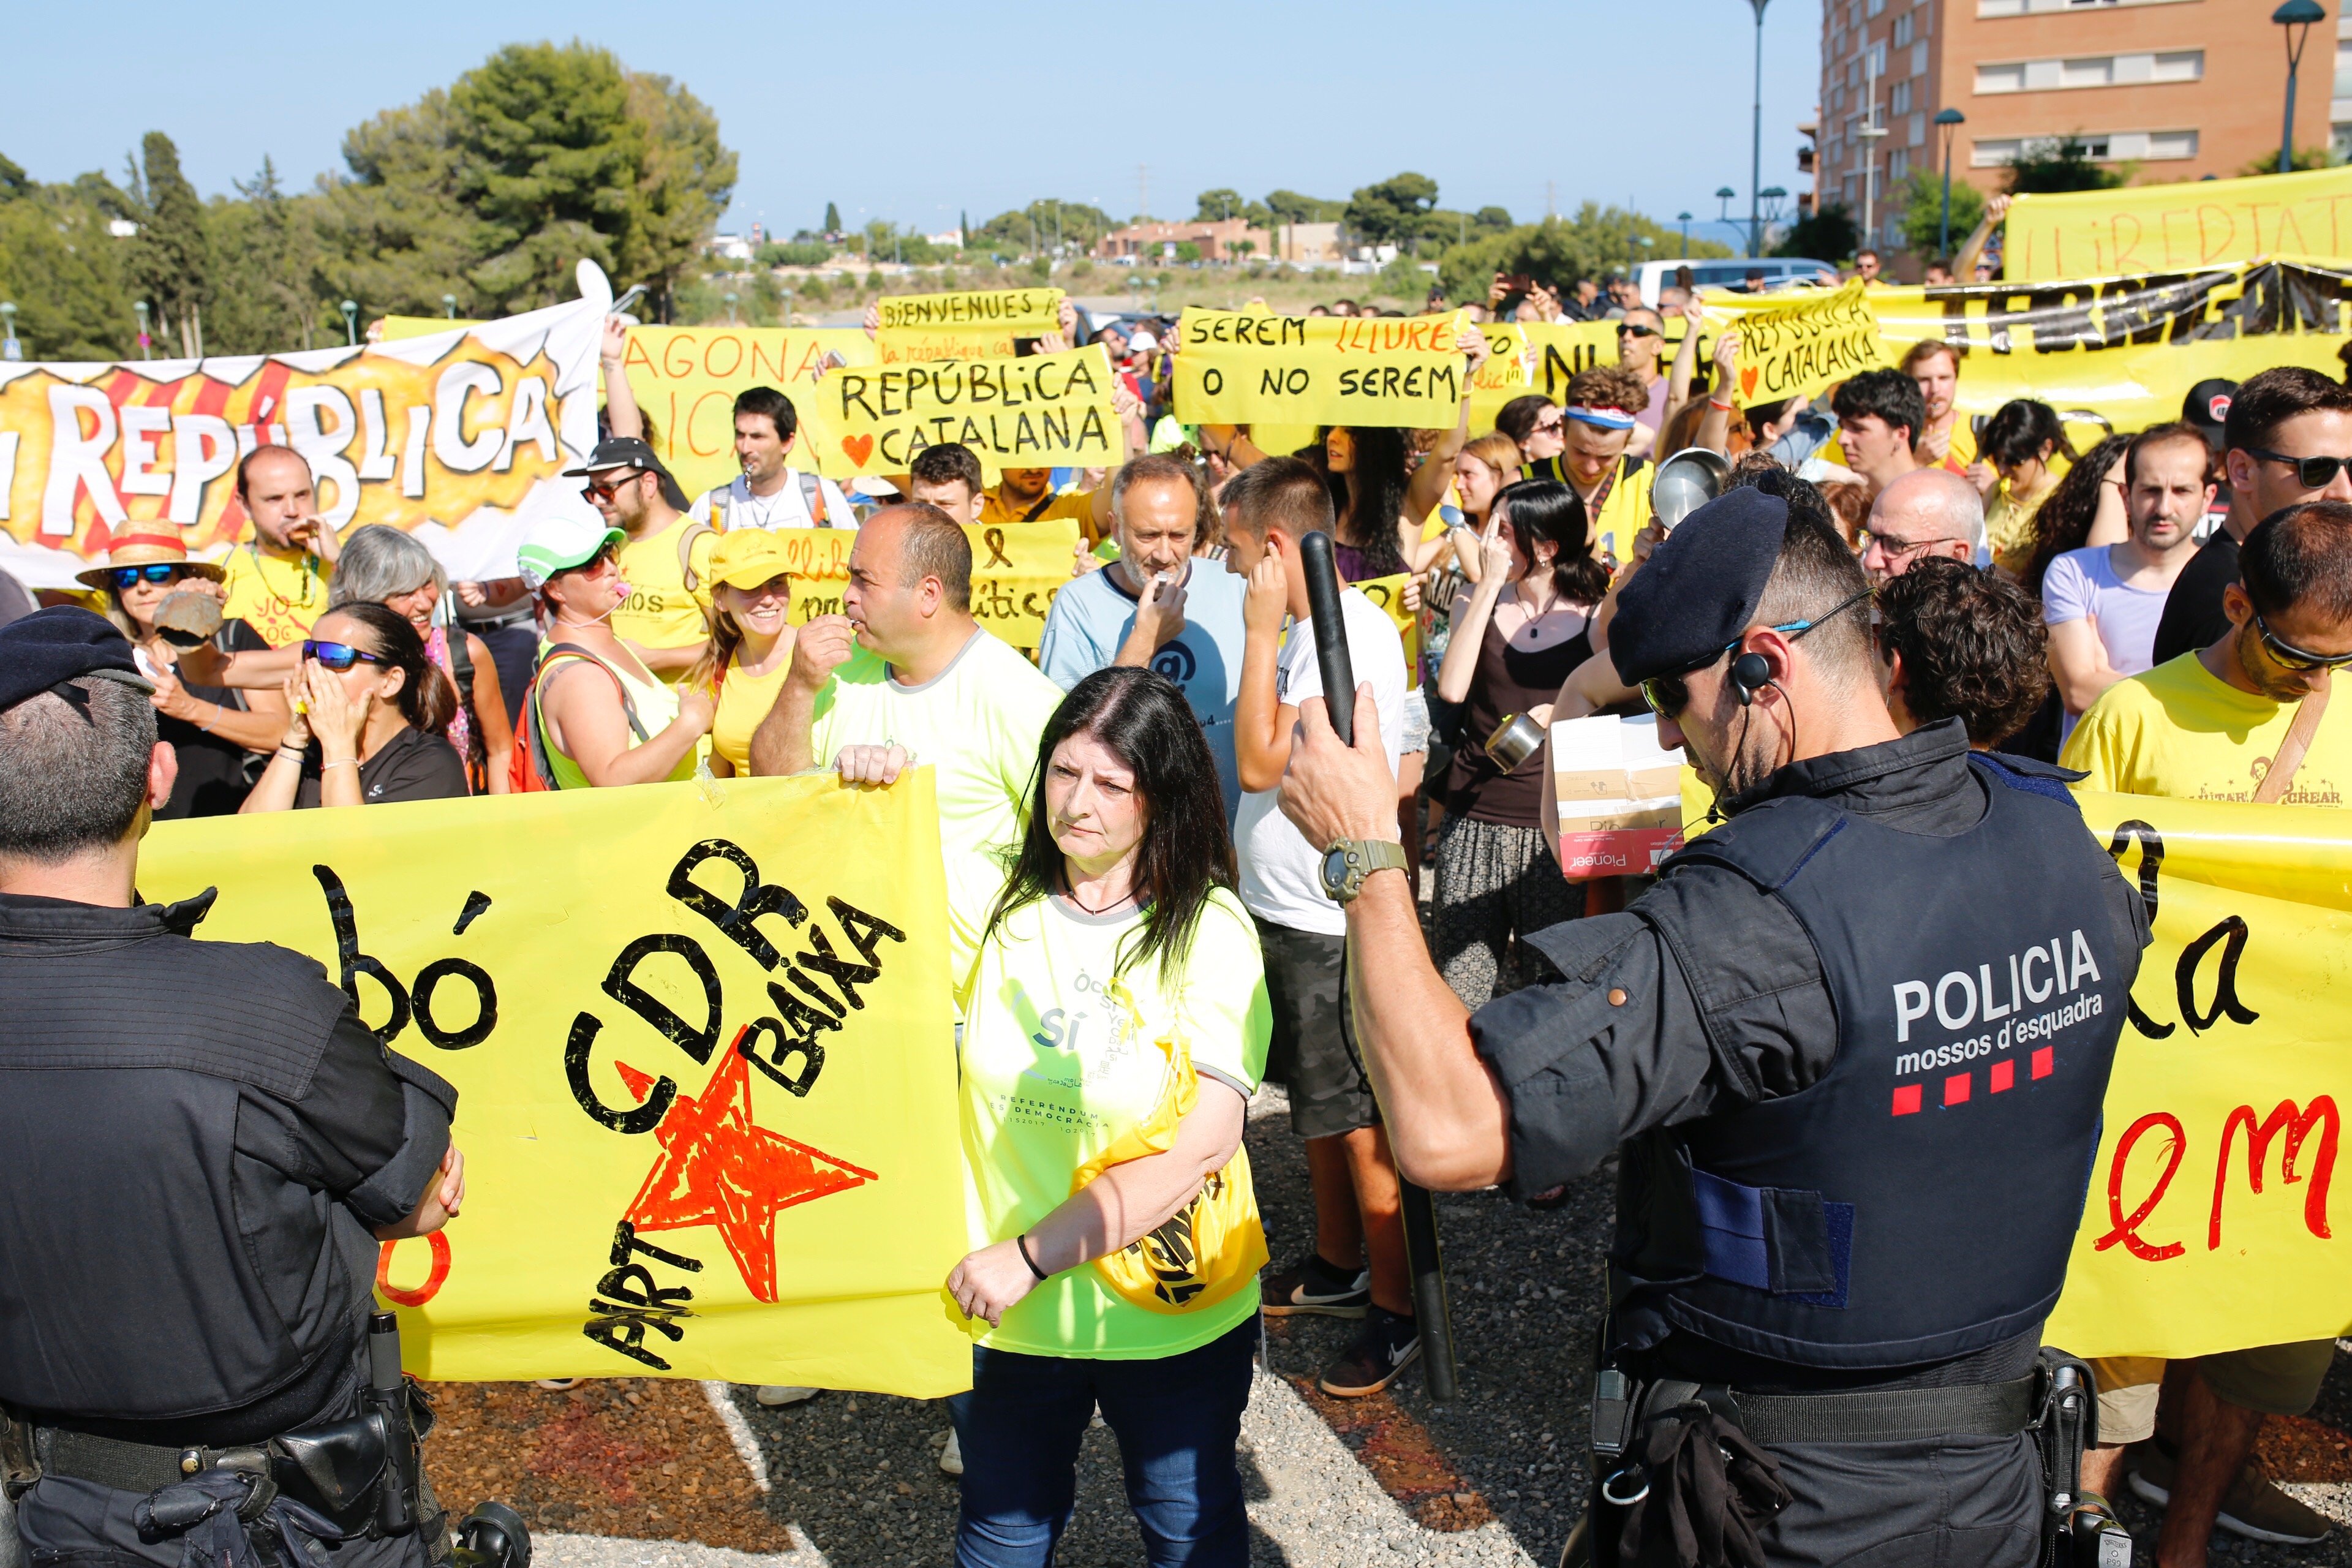 Las protestas del CDR y los españolistas calientan la llegada del Rey